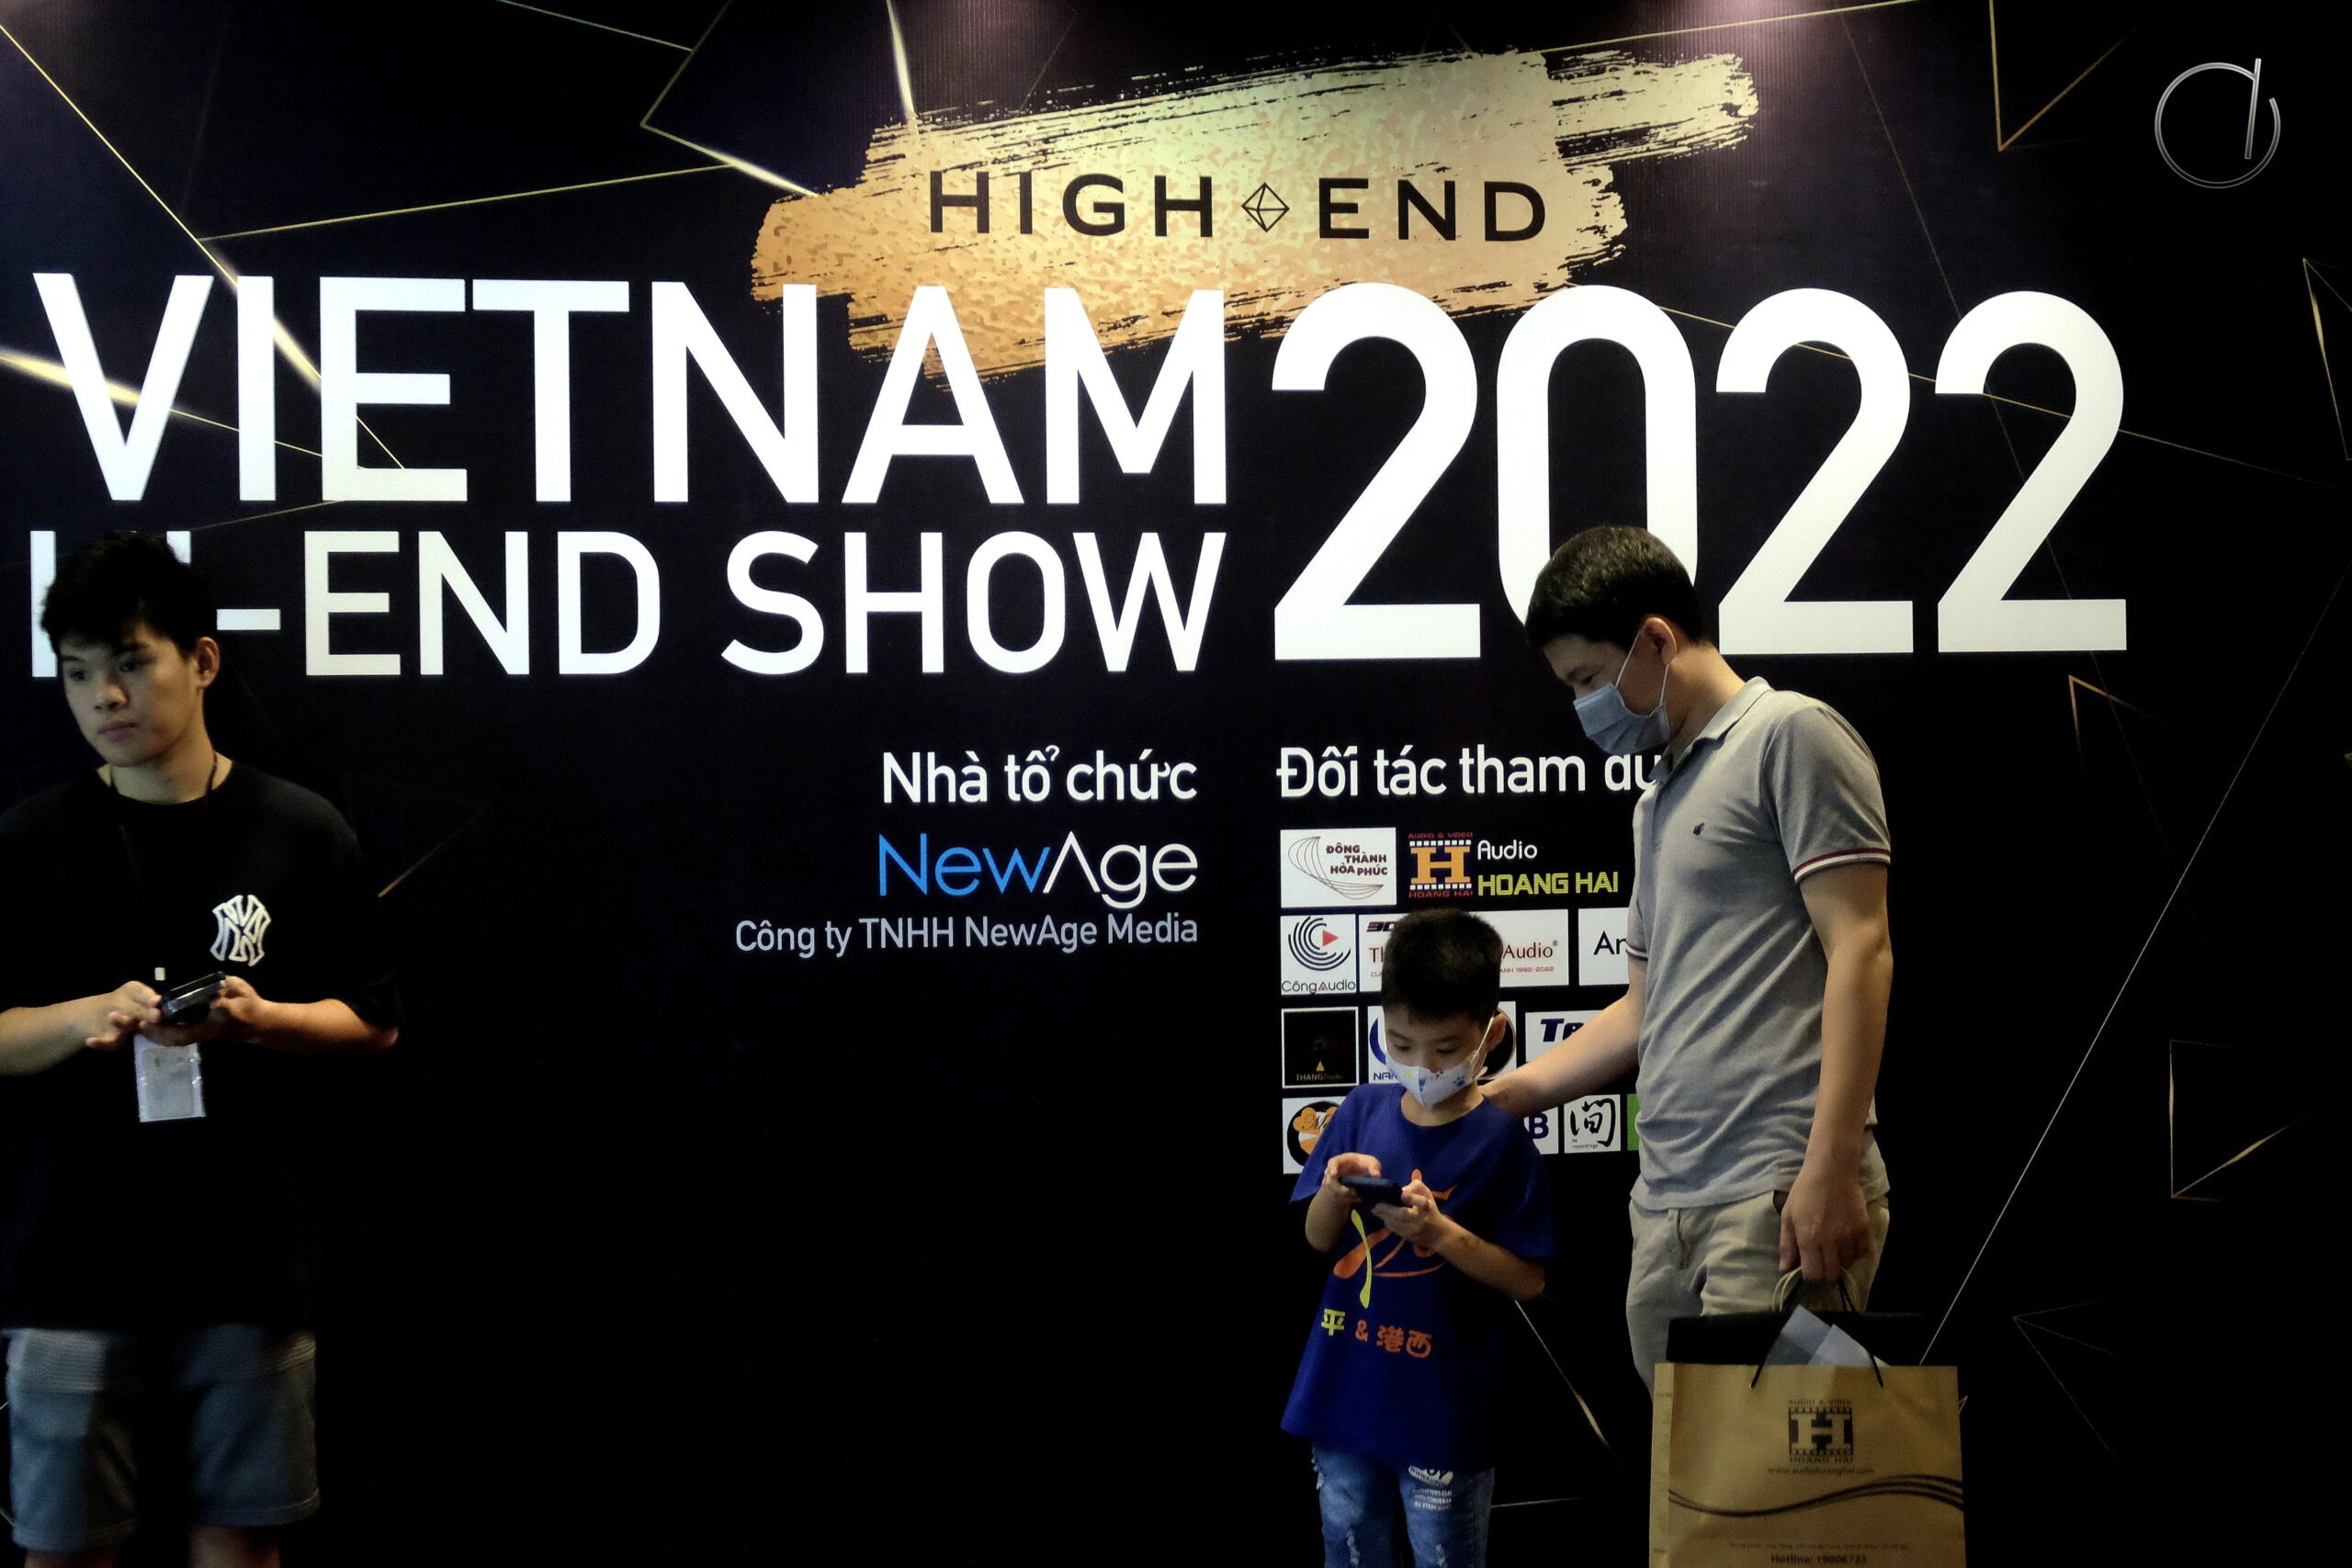 Vietnam High-end Show 2022